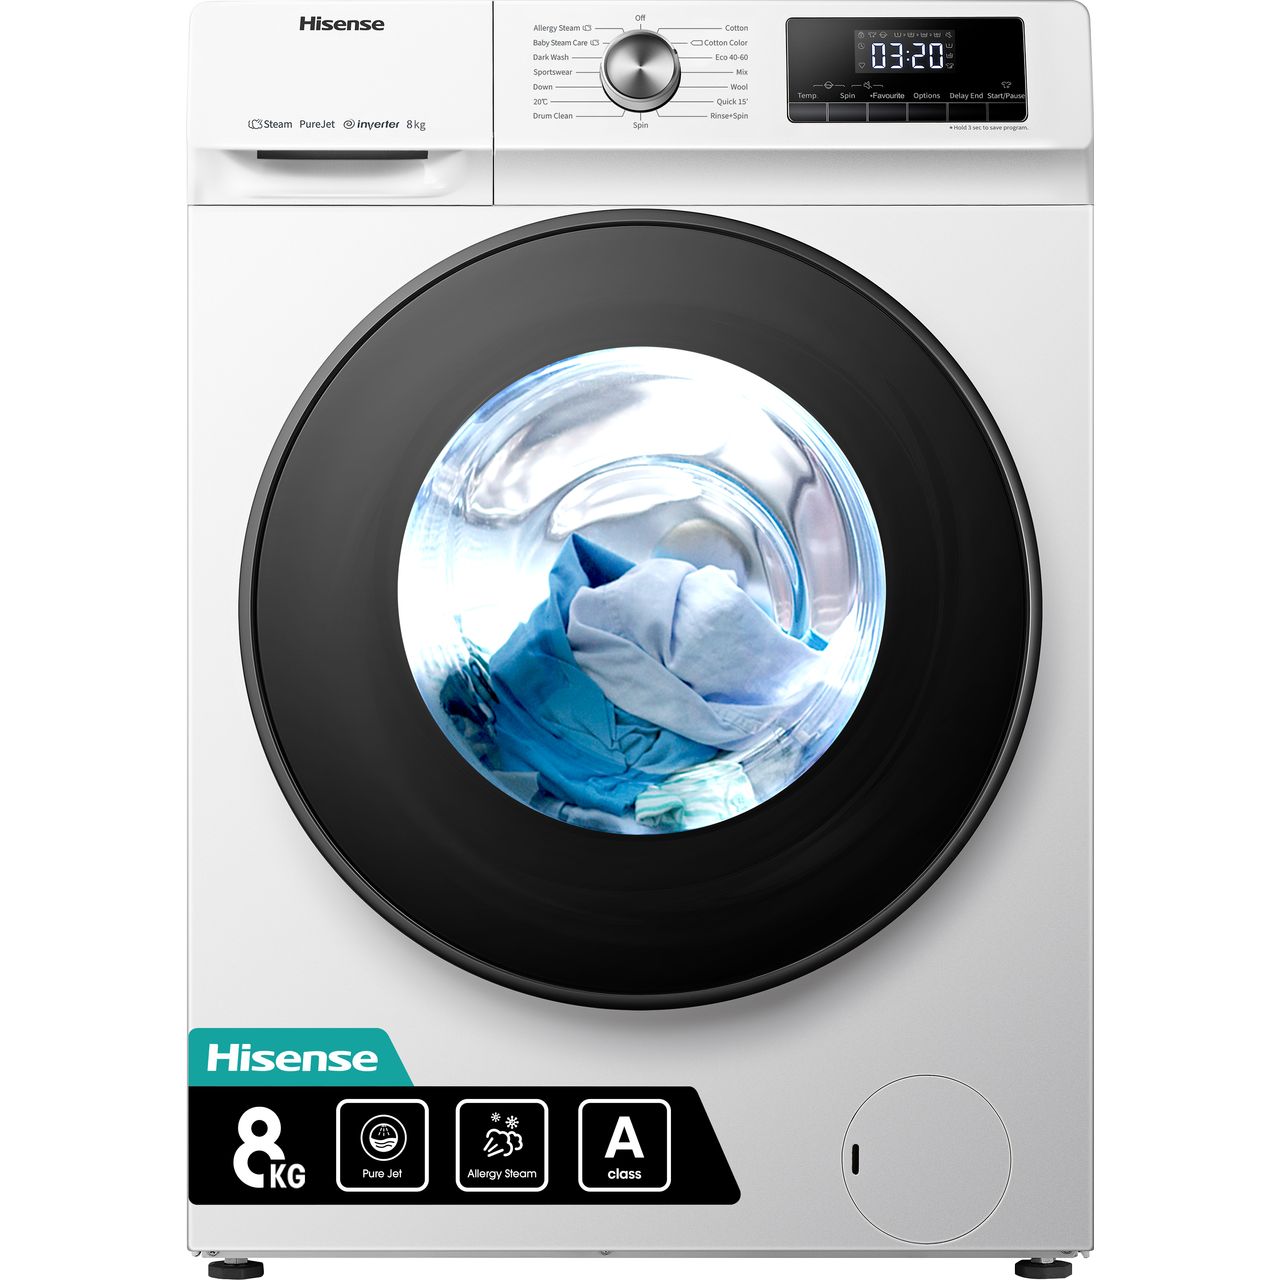 White | machine WFQA8014EVJM | 8kg washing Hisense